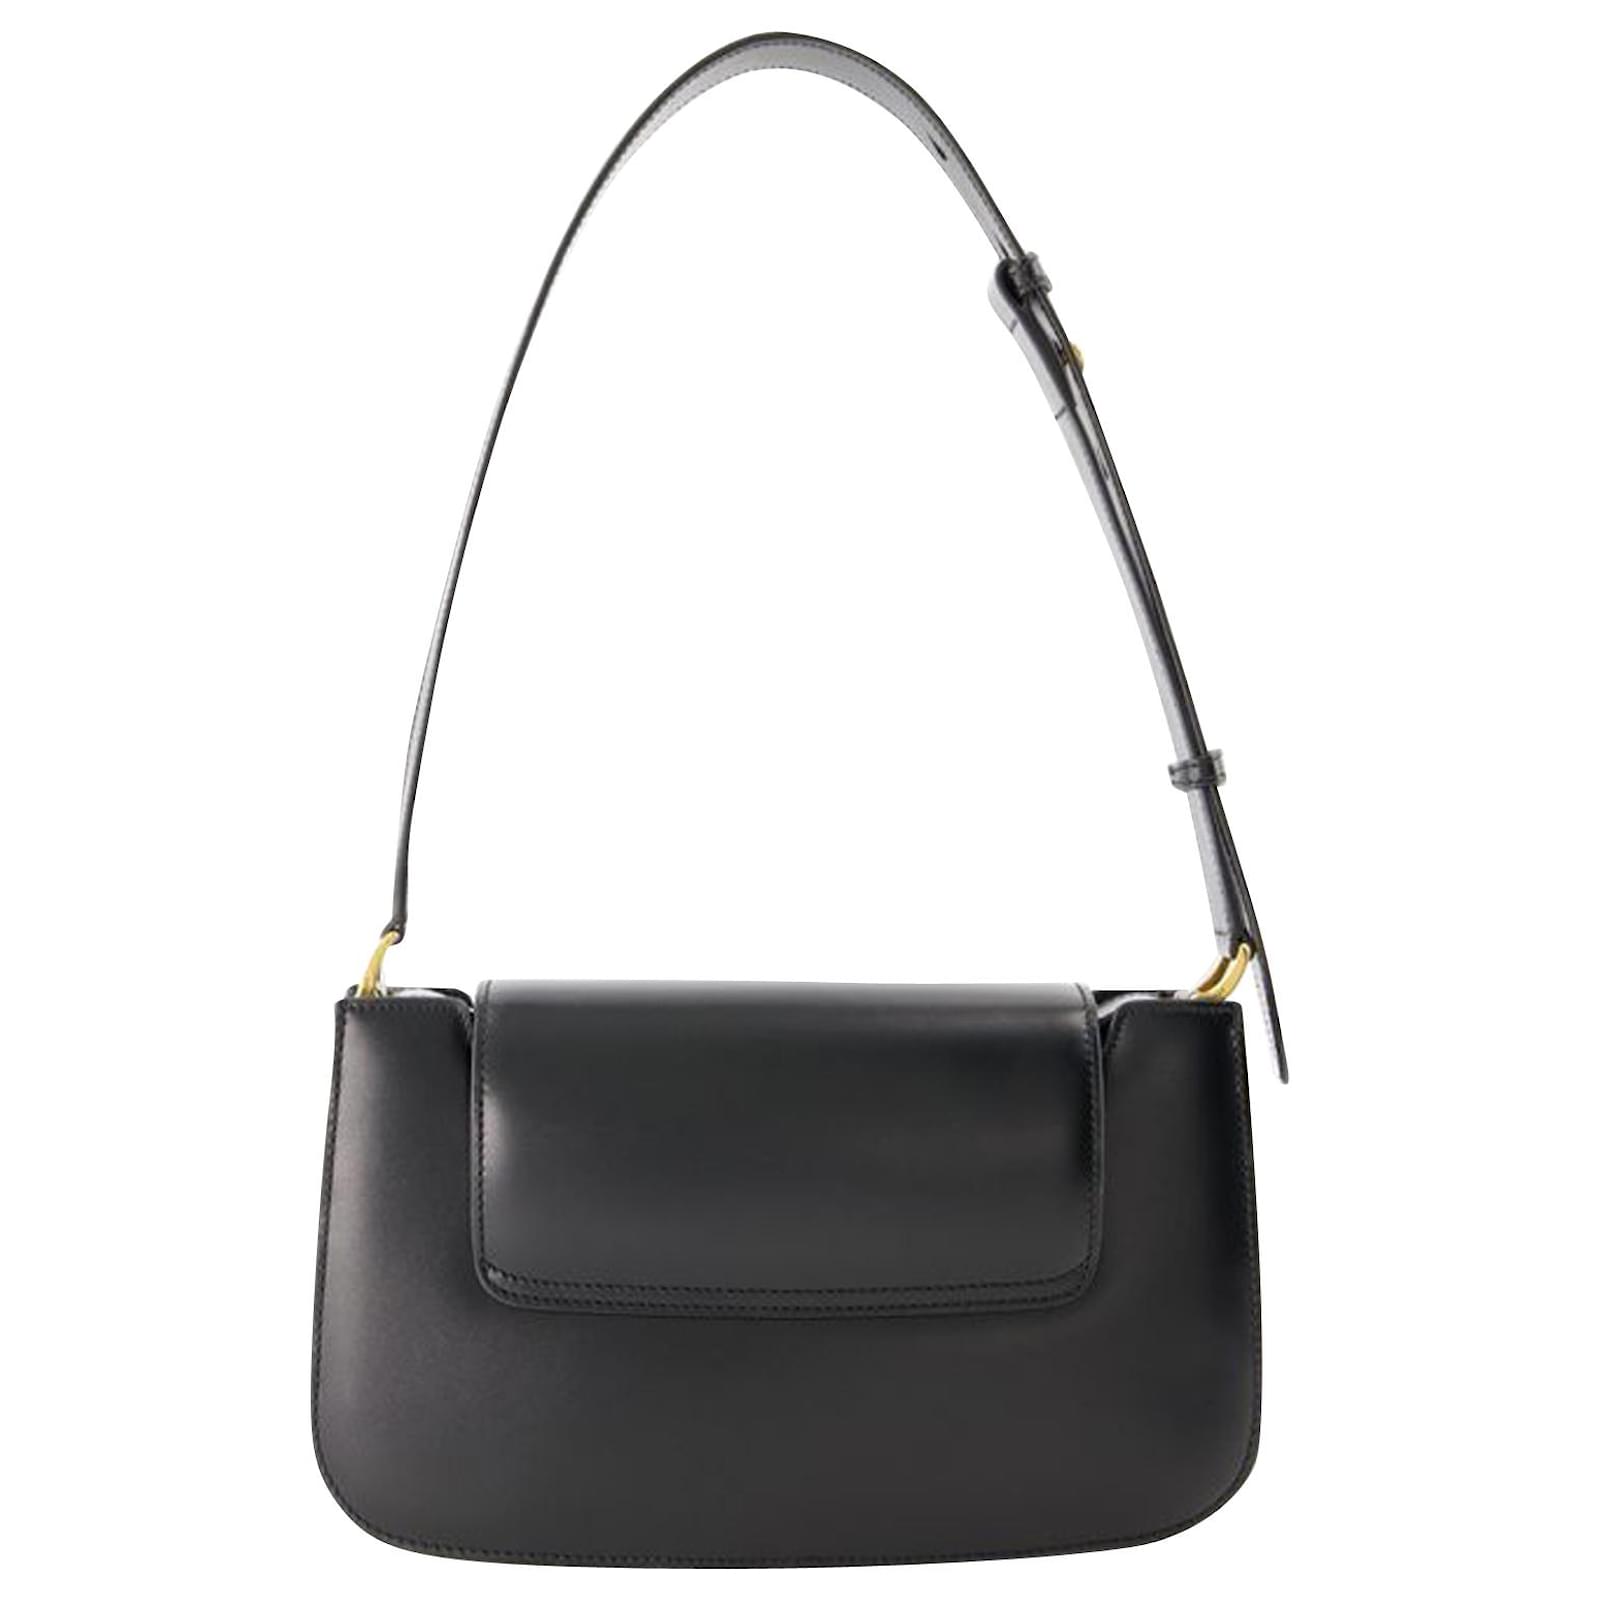 AMI - Women's Paris Bags Shoulder Bag - Black - Leather